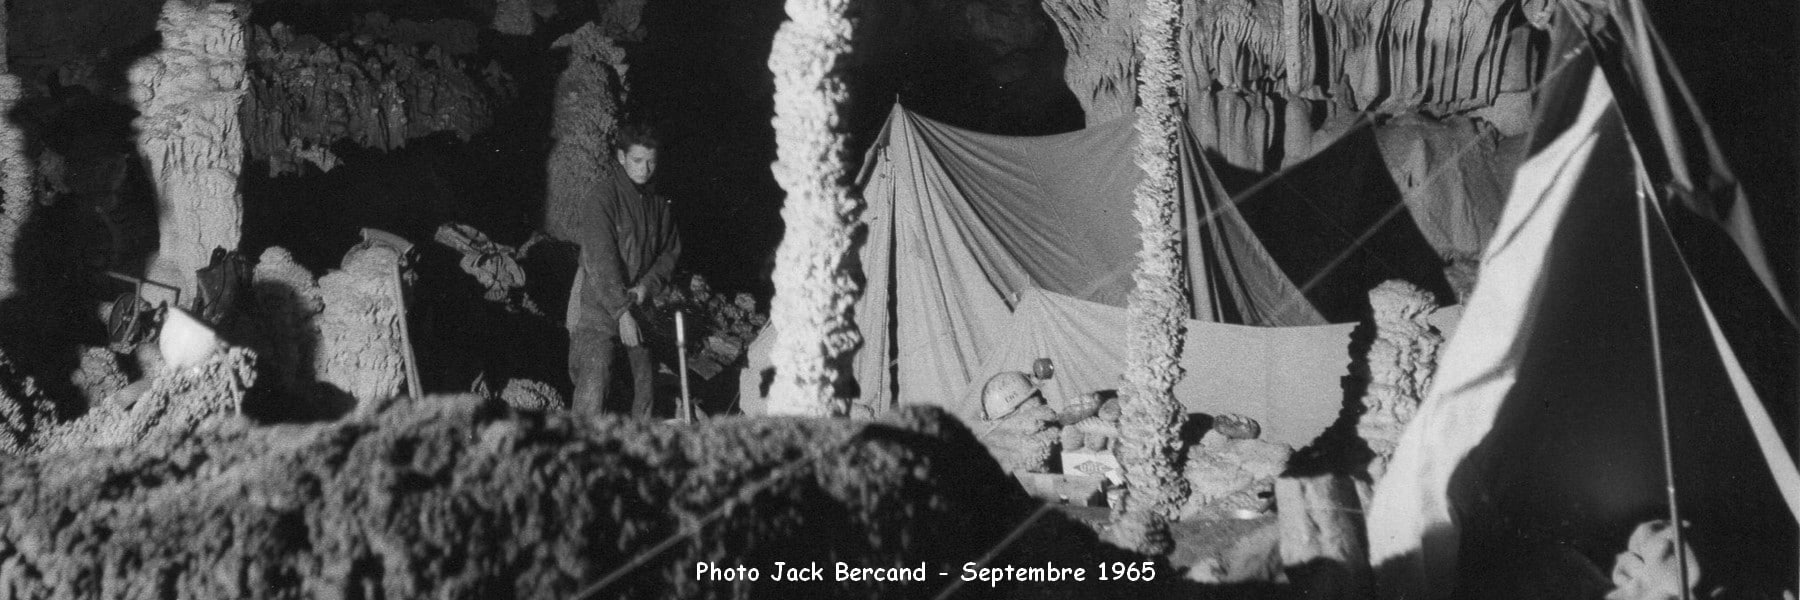 Le campement dans la Grotte en 1965